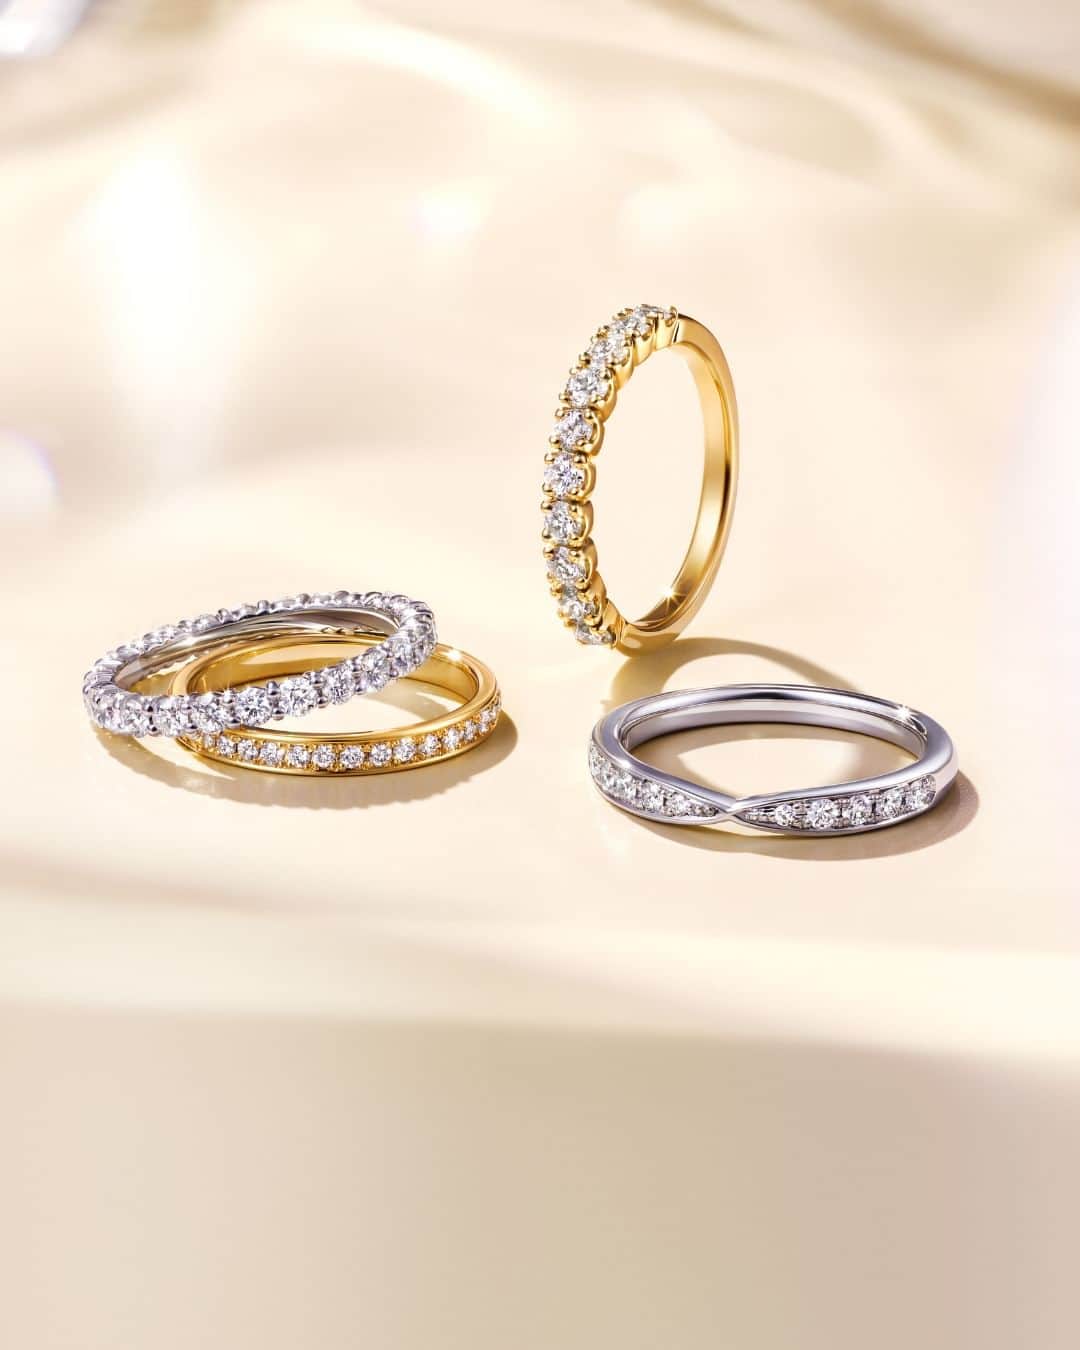 婚約・結婚指輪のI-PRIMO（アイプリモ）公式アカウントのインスタグラム